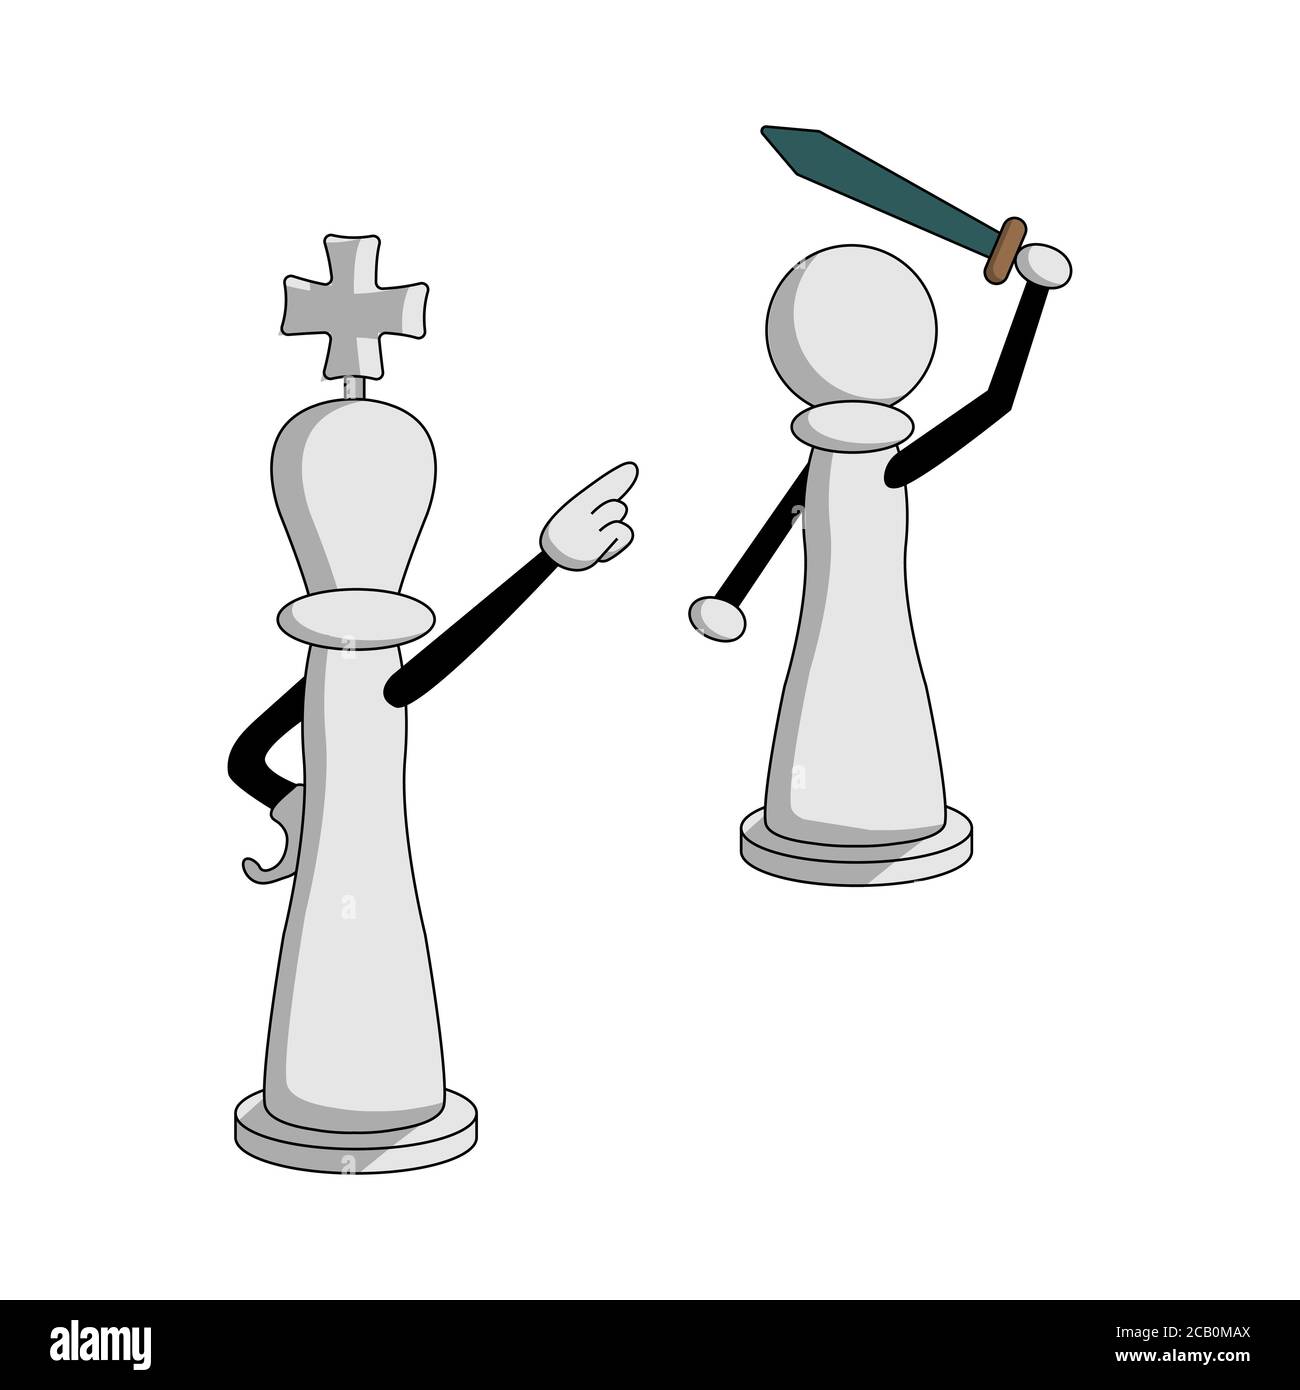 Cartoon weiße Schachfiguren. Die Königin schickt einen Bauer mit einem Schwert in den Kampf. Isolierte Vektor-Illustration Stock Vektor